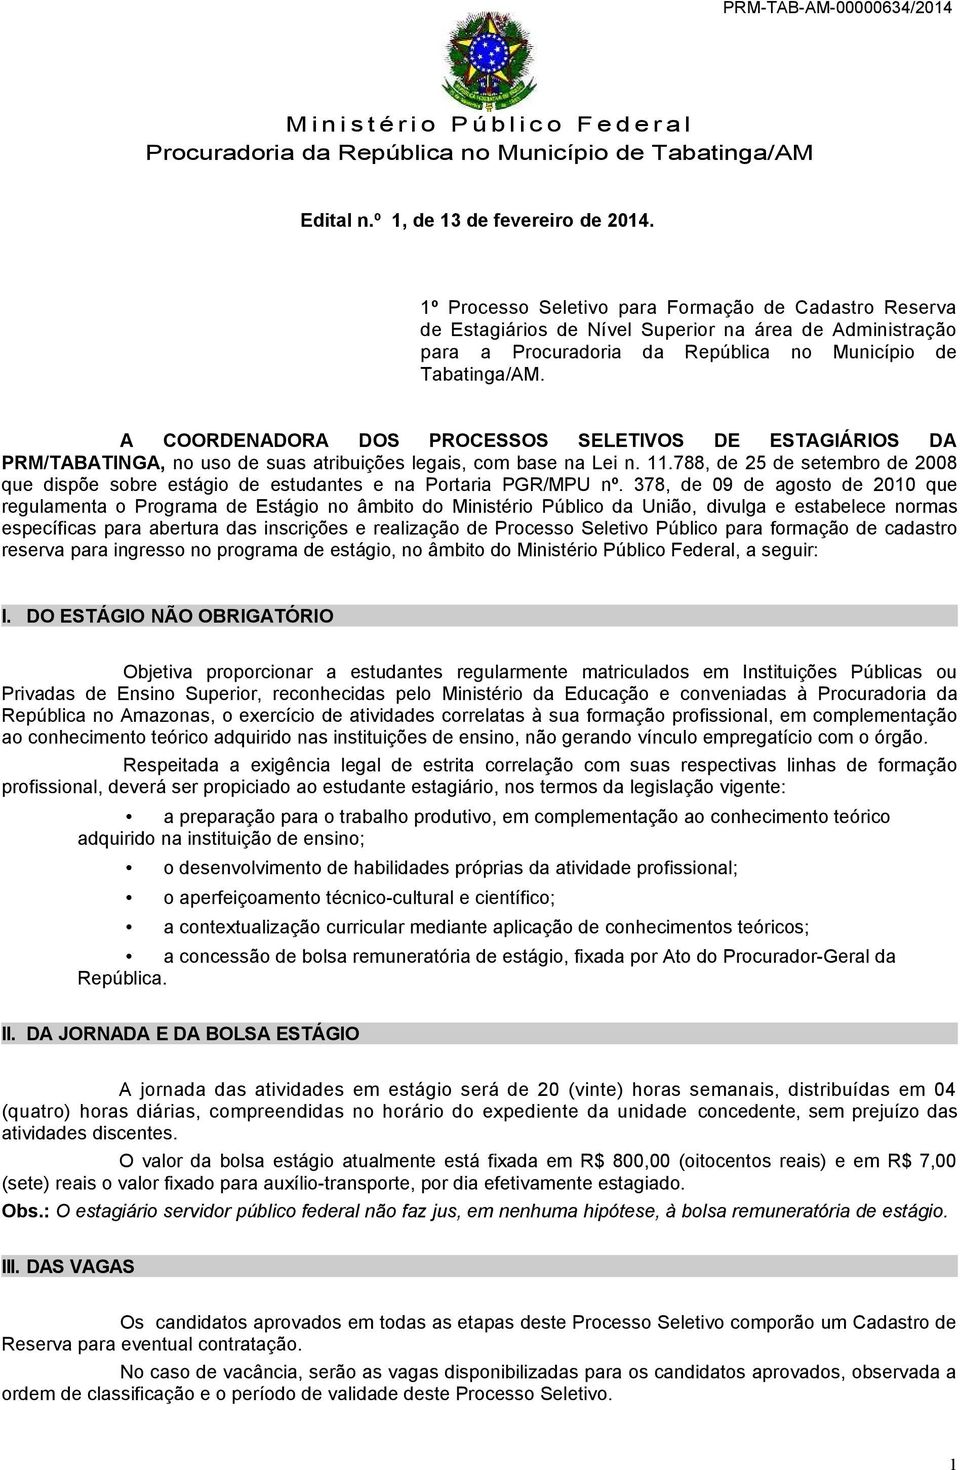 A COORDENADORA DOS PROCESSOS SELETIVOS DE ESTAGIÁRIOS DA PRM/TABATINGA, no uso de suas atribuições legais, com base na Lei n. 11.